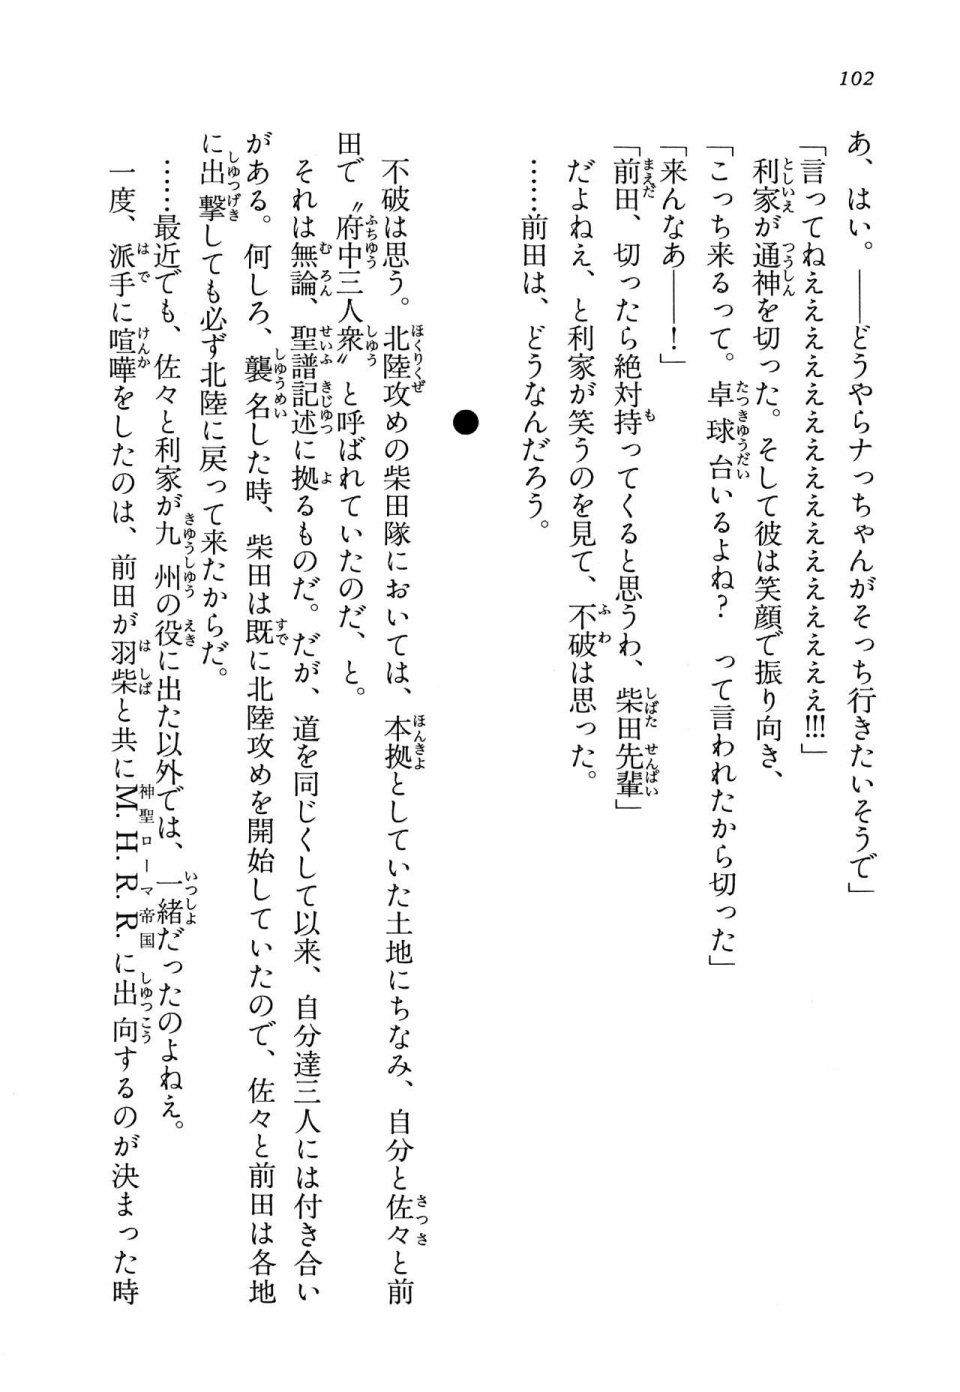 Kyoukai Senjou no Horizon LN Vol 13(6A) - Photo #102